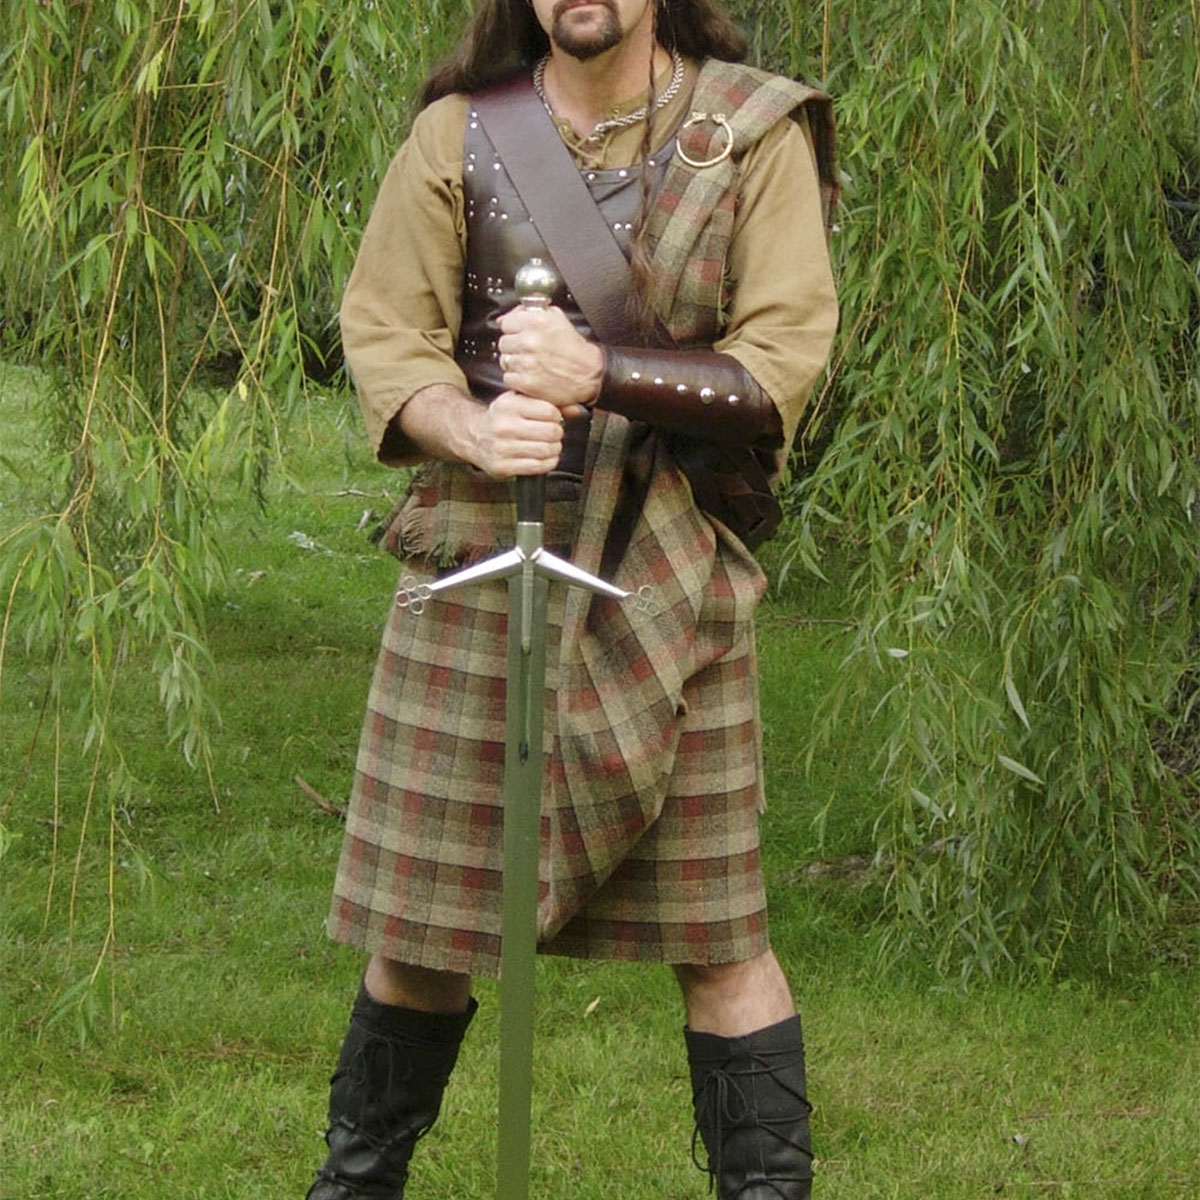 A man in a Welsh Tartan Medium Weight Premium Wool Ancient Kilt holding a sword.